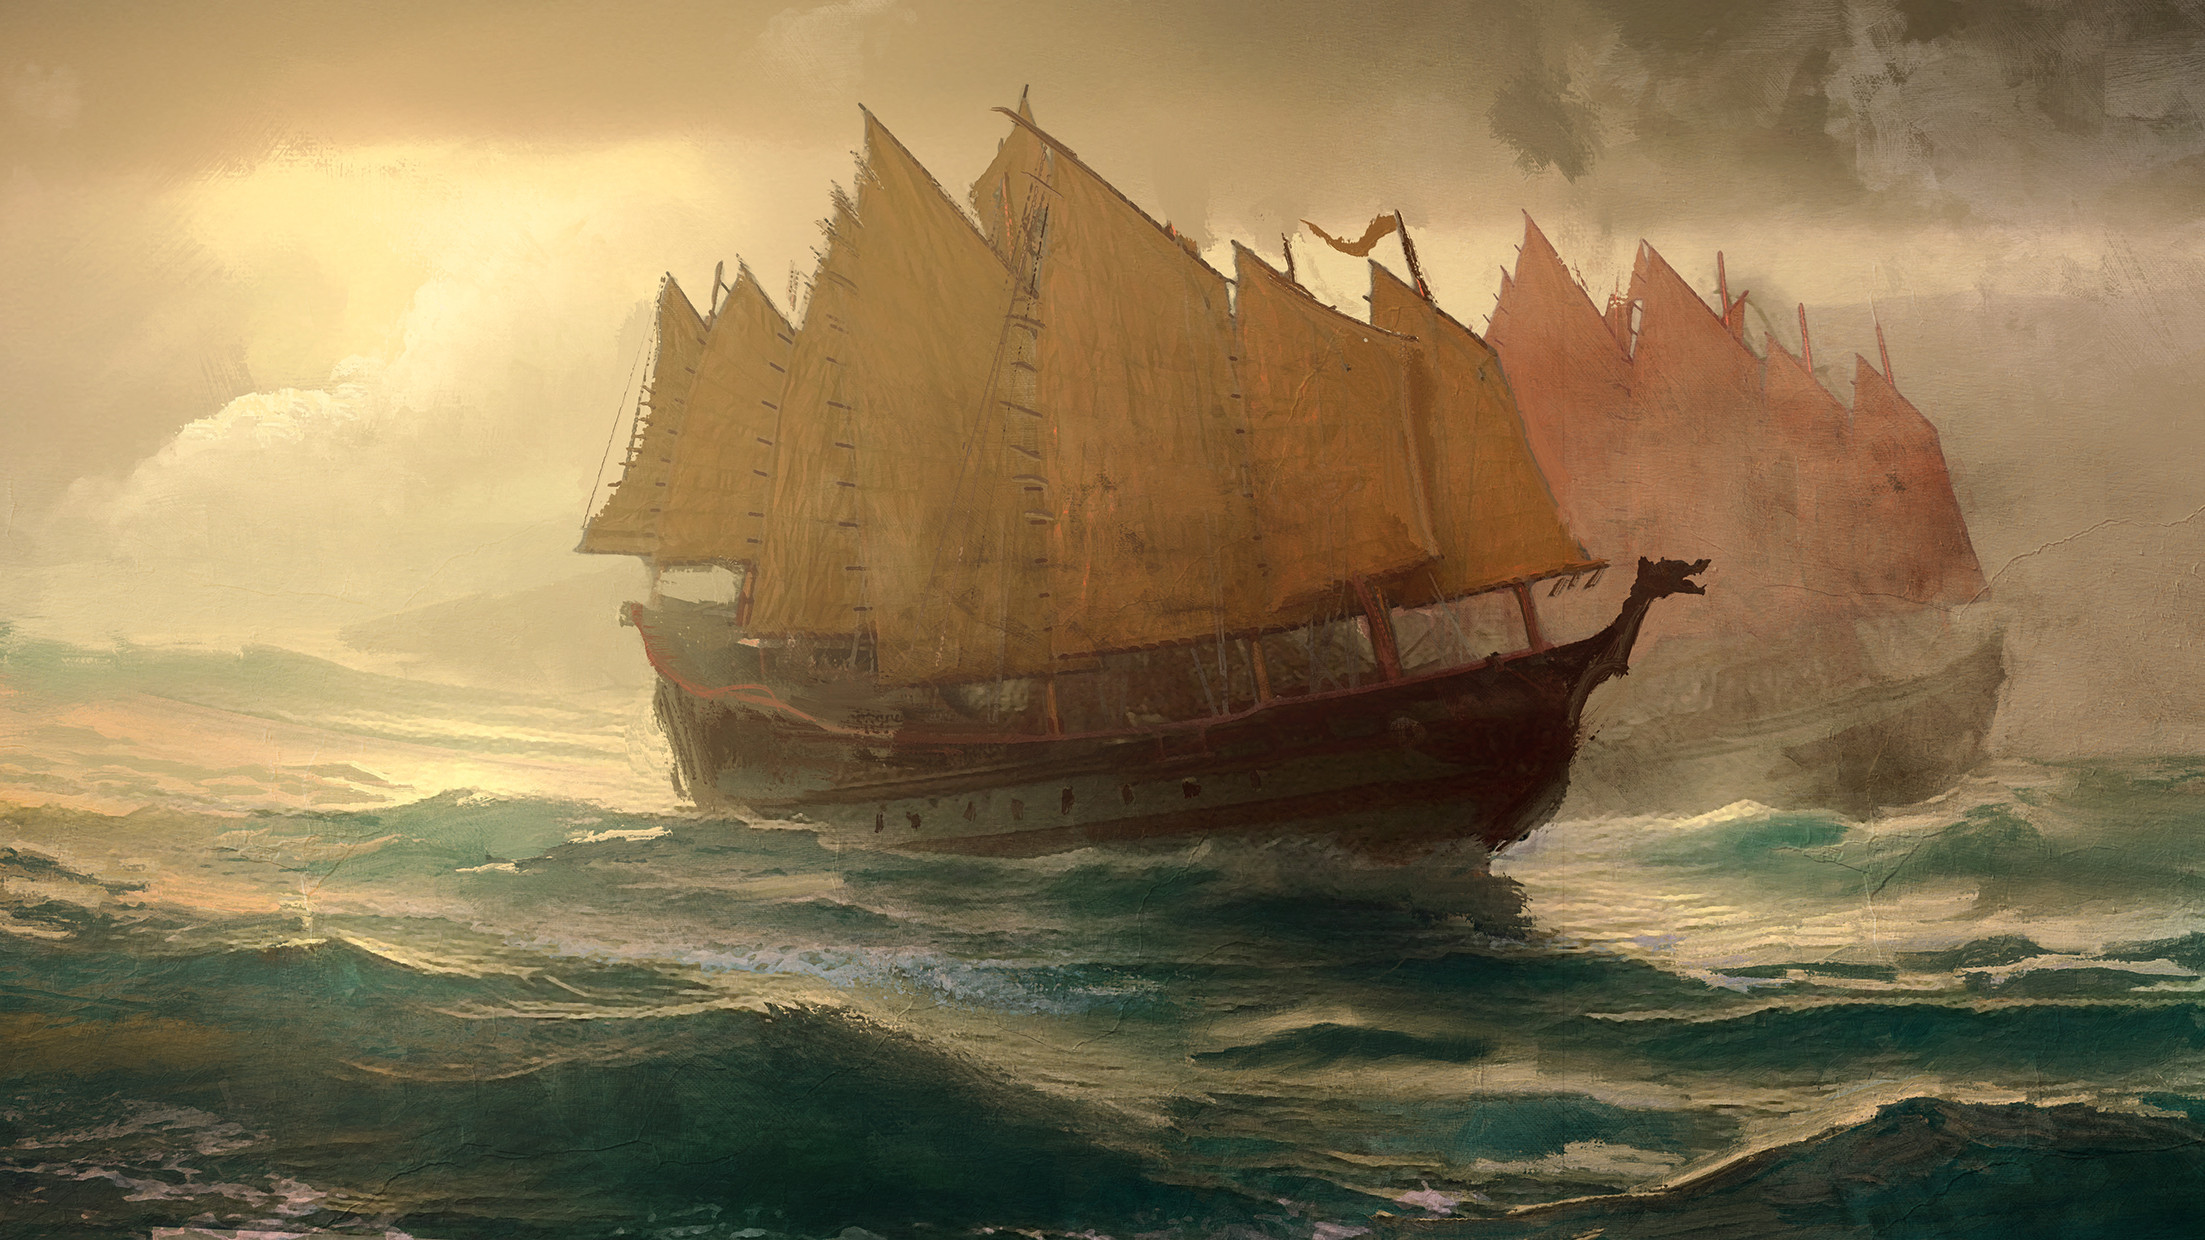 The Final Voyage of Zheng He